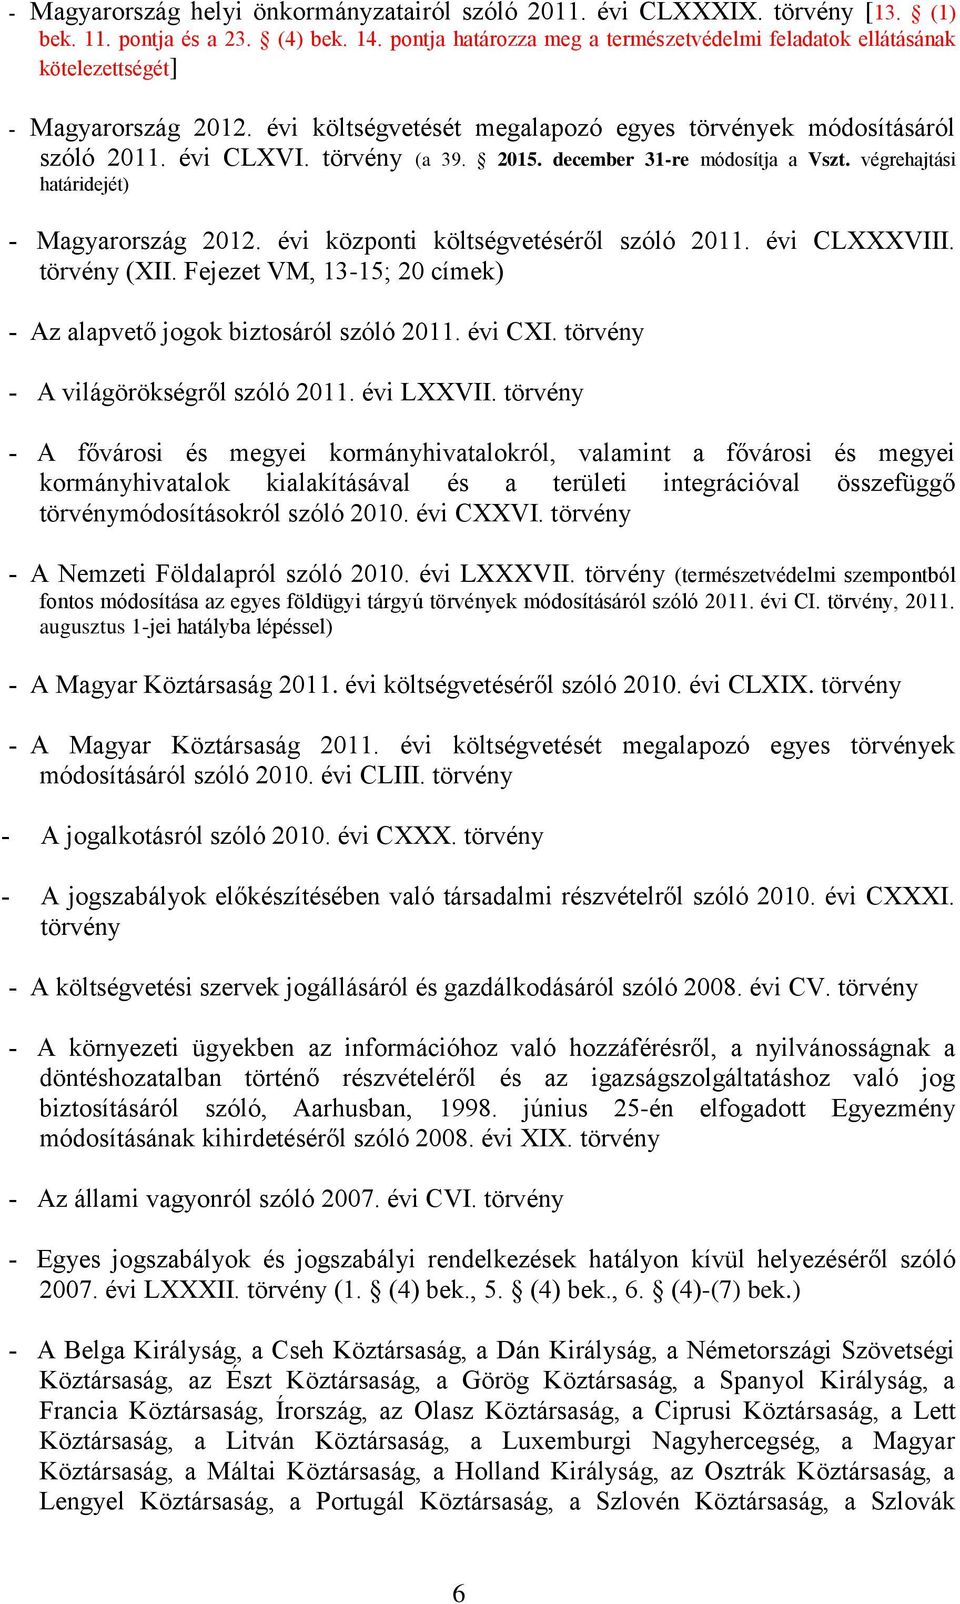 2015. december 31-re módosítja a Vszt. végrehajtási határidejét) Magyarország 2012. évi központi költségvetéséről szóló 2011. évi CLXXXVIII. törvény (XII.